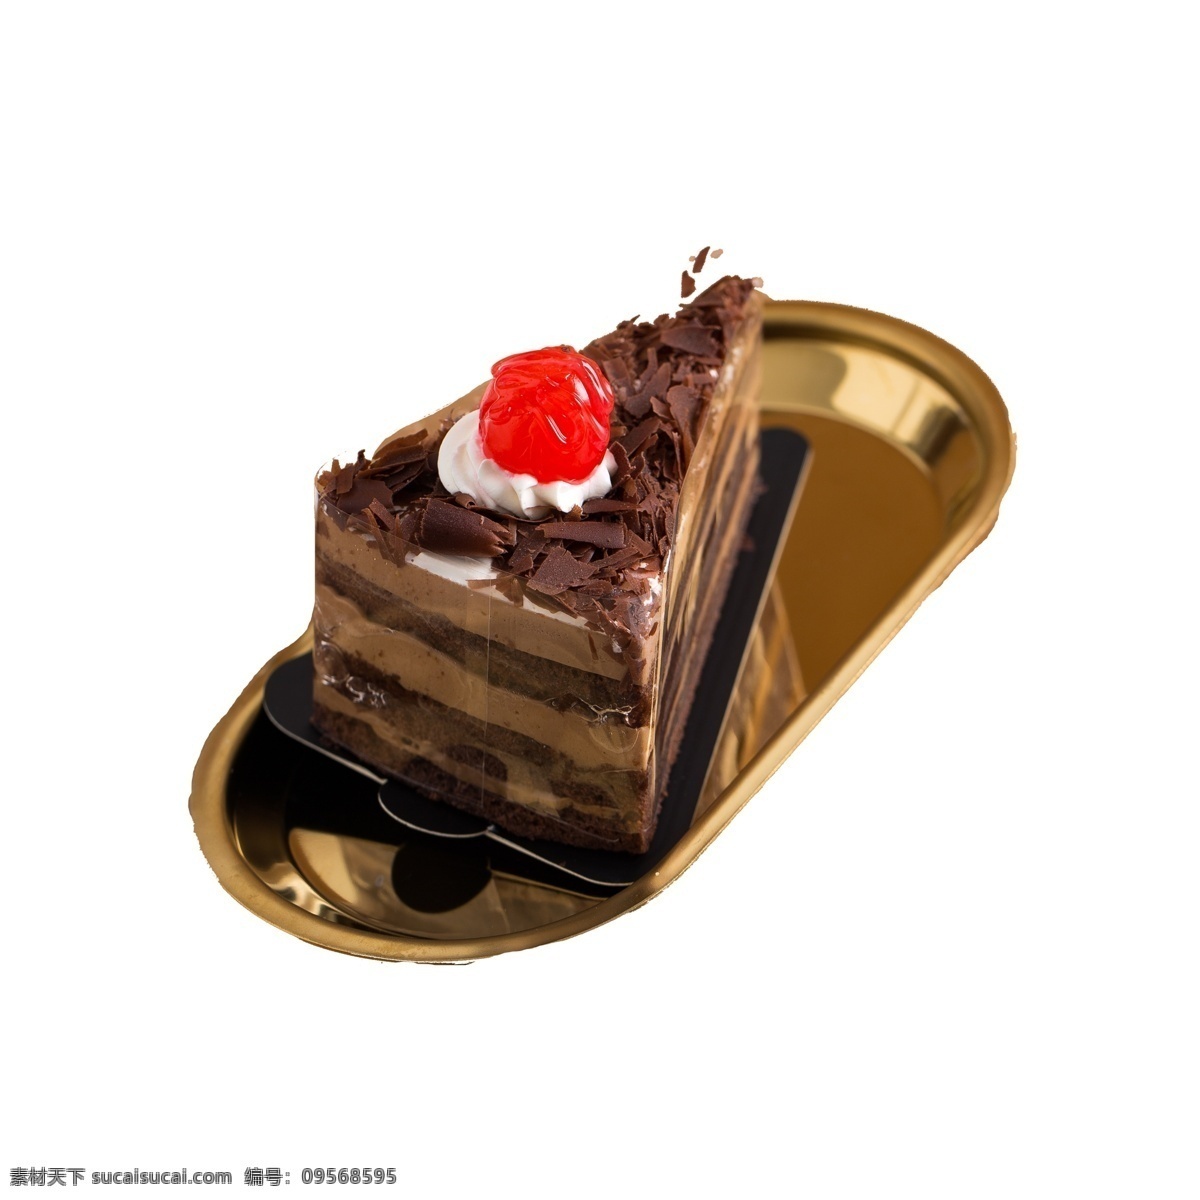 一碟 黑森林 蛋糕 免 抠 图 好吃 好看 摆盘的黑森林 巧克力 碎巧克力蛋糕 夹心糕点